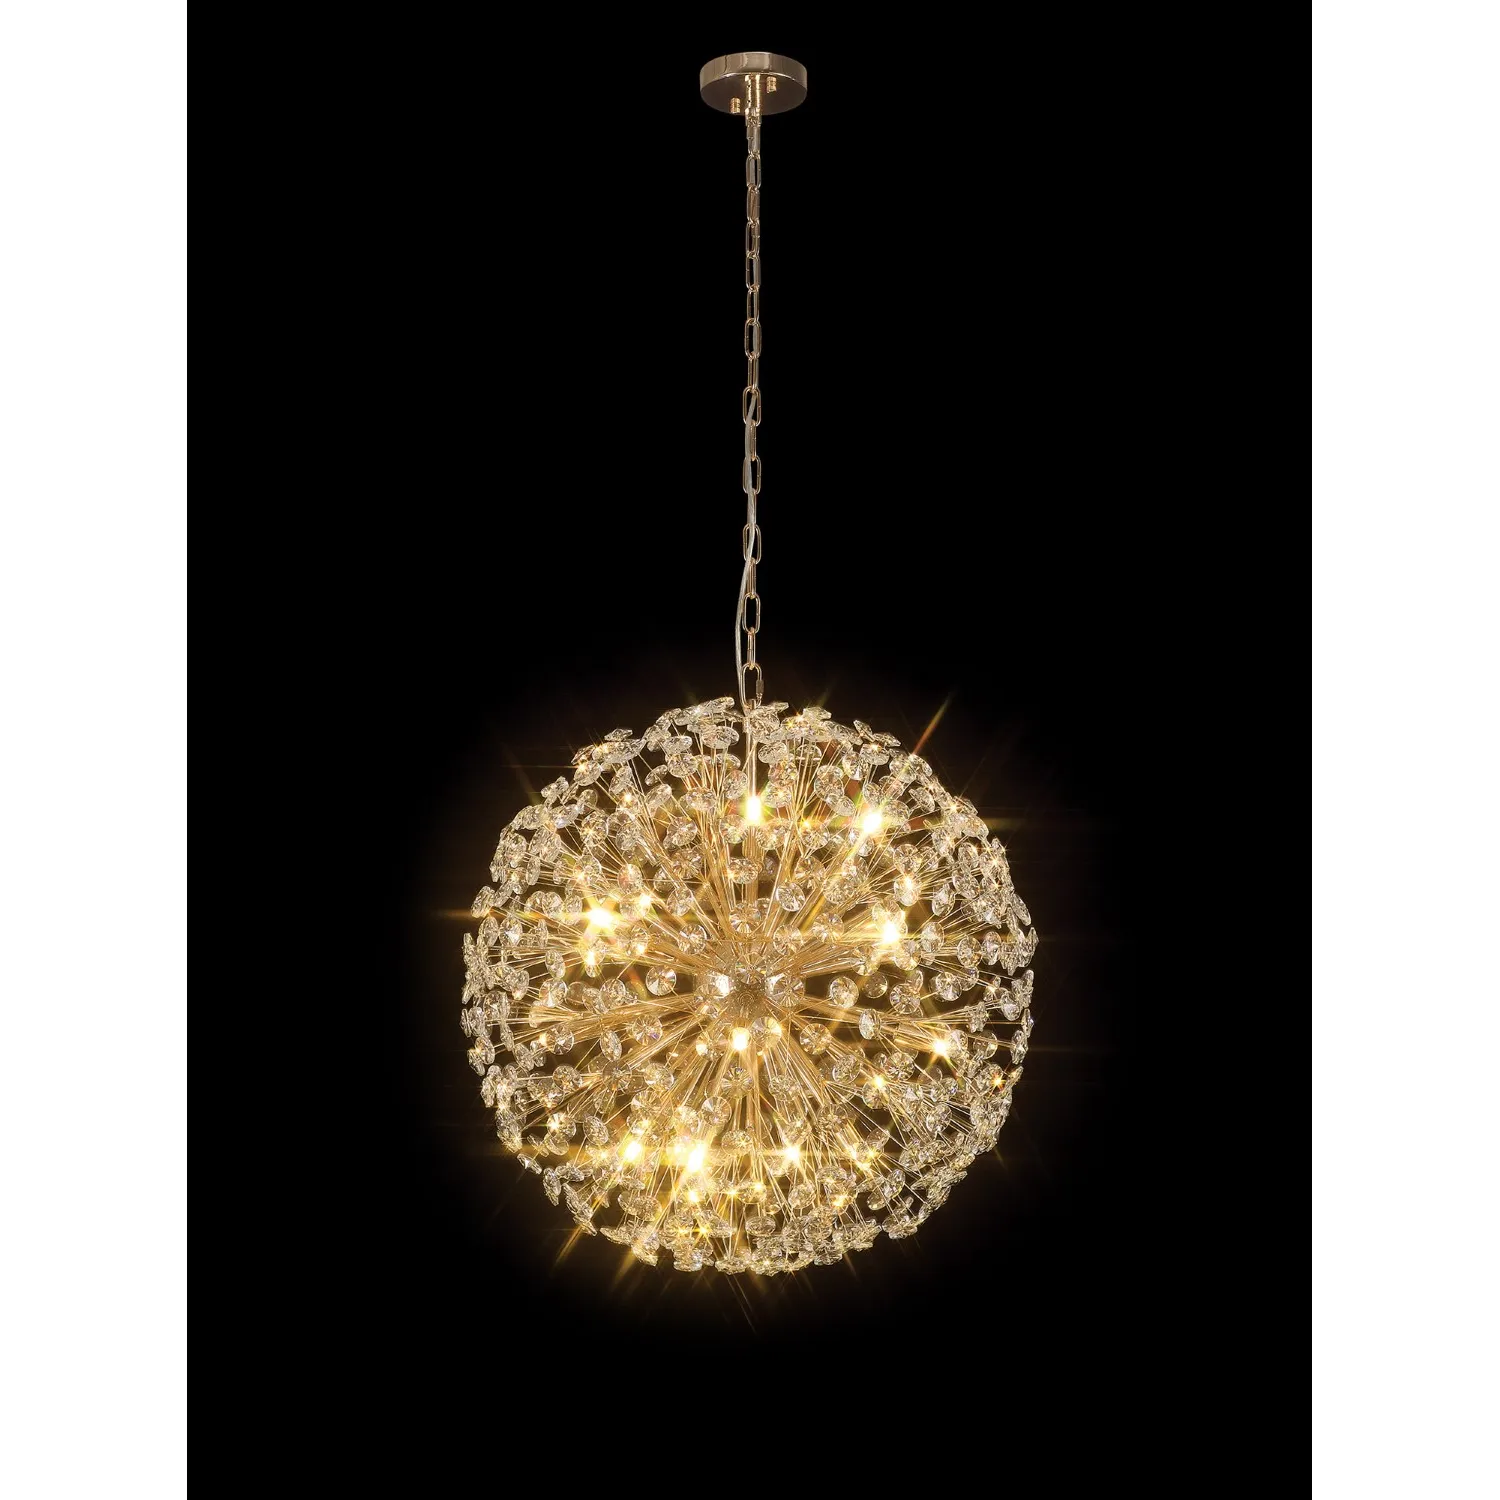 Camden Pendant 60cm Sphere 16 Light G9 French Gold Crystal